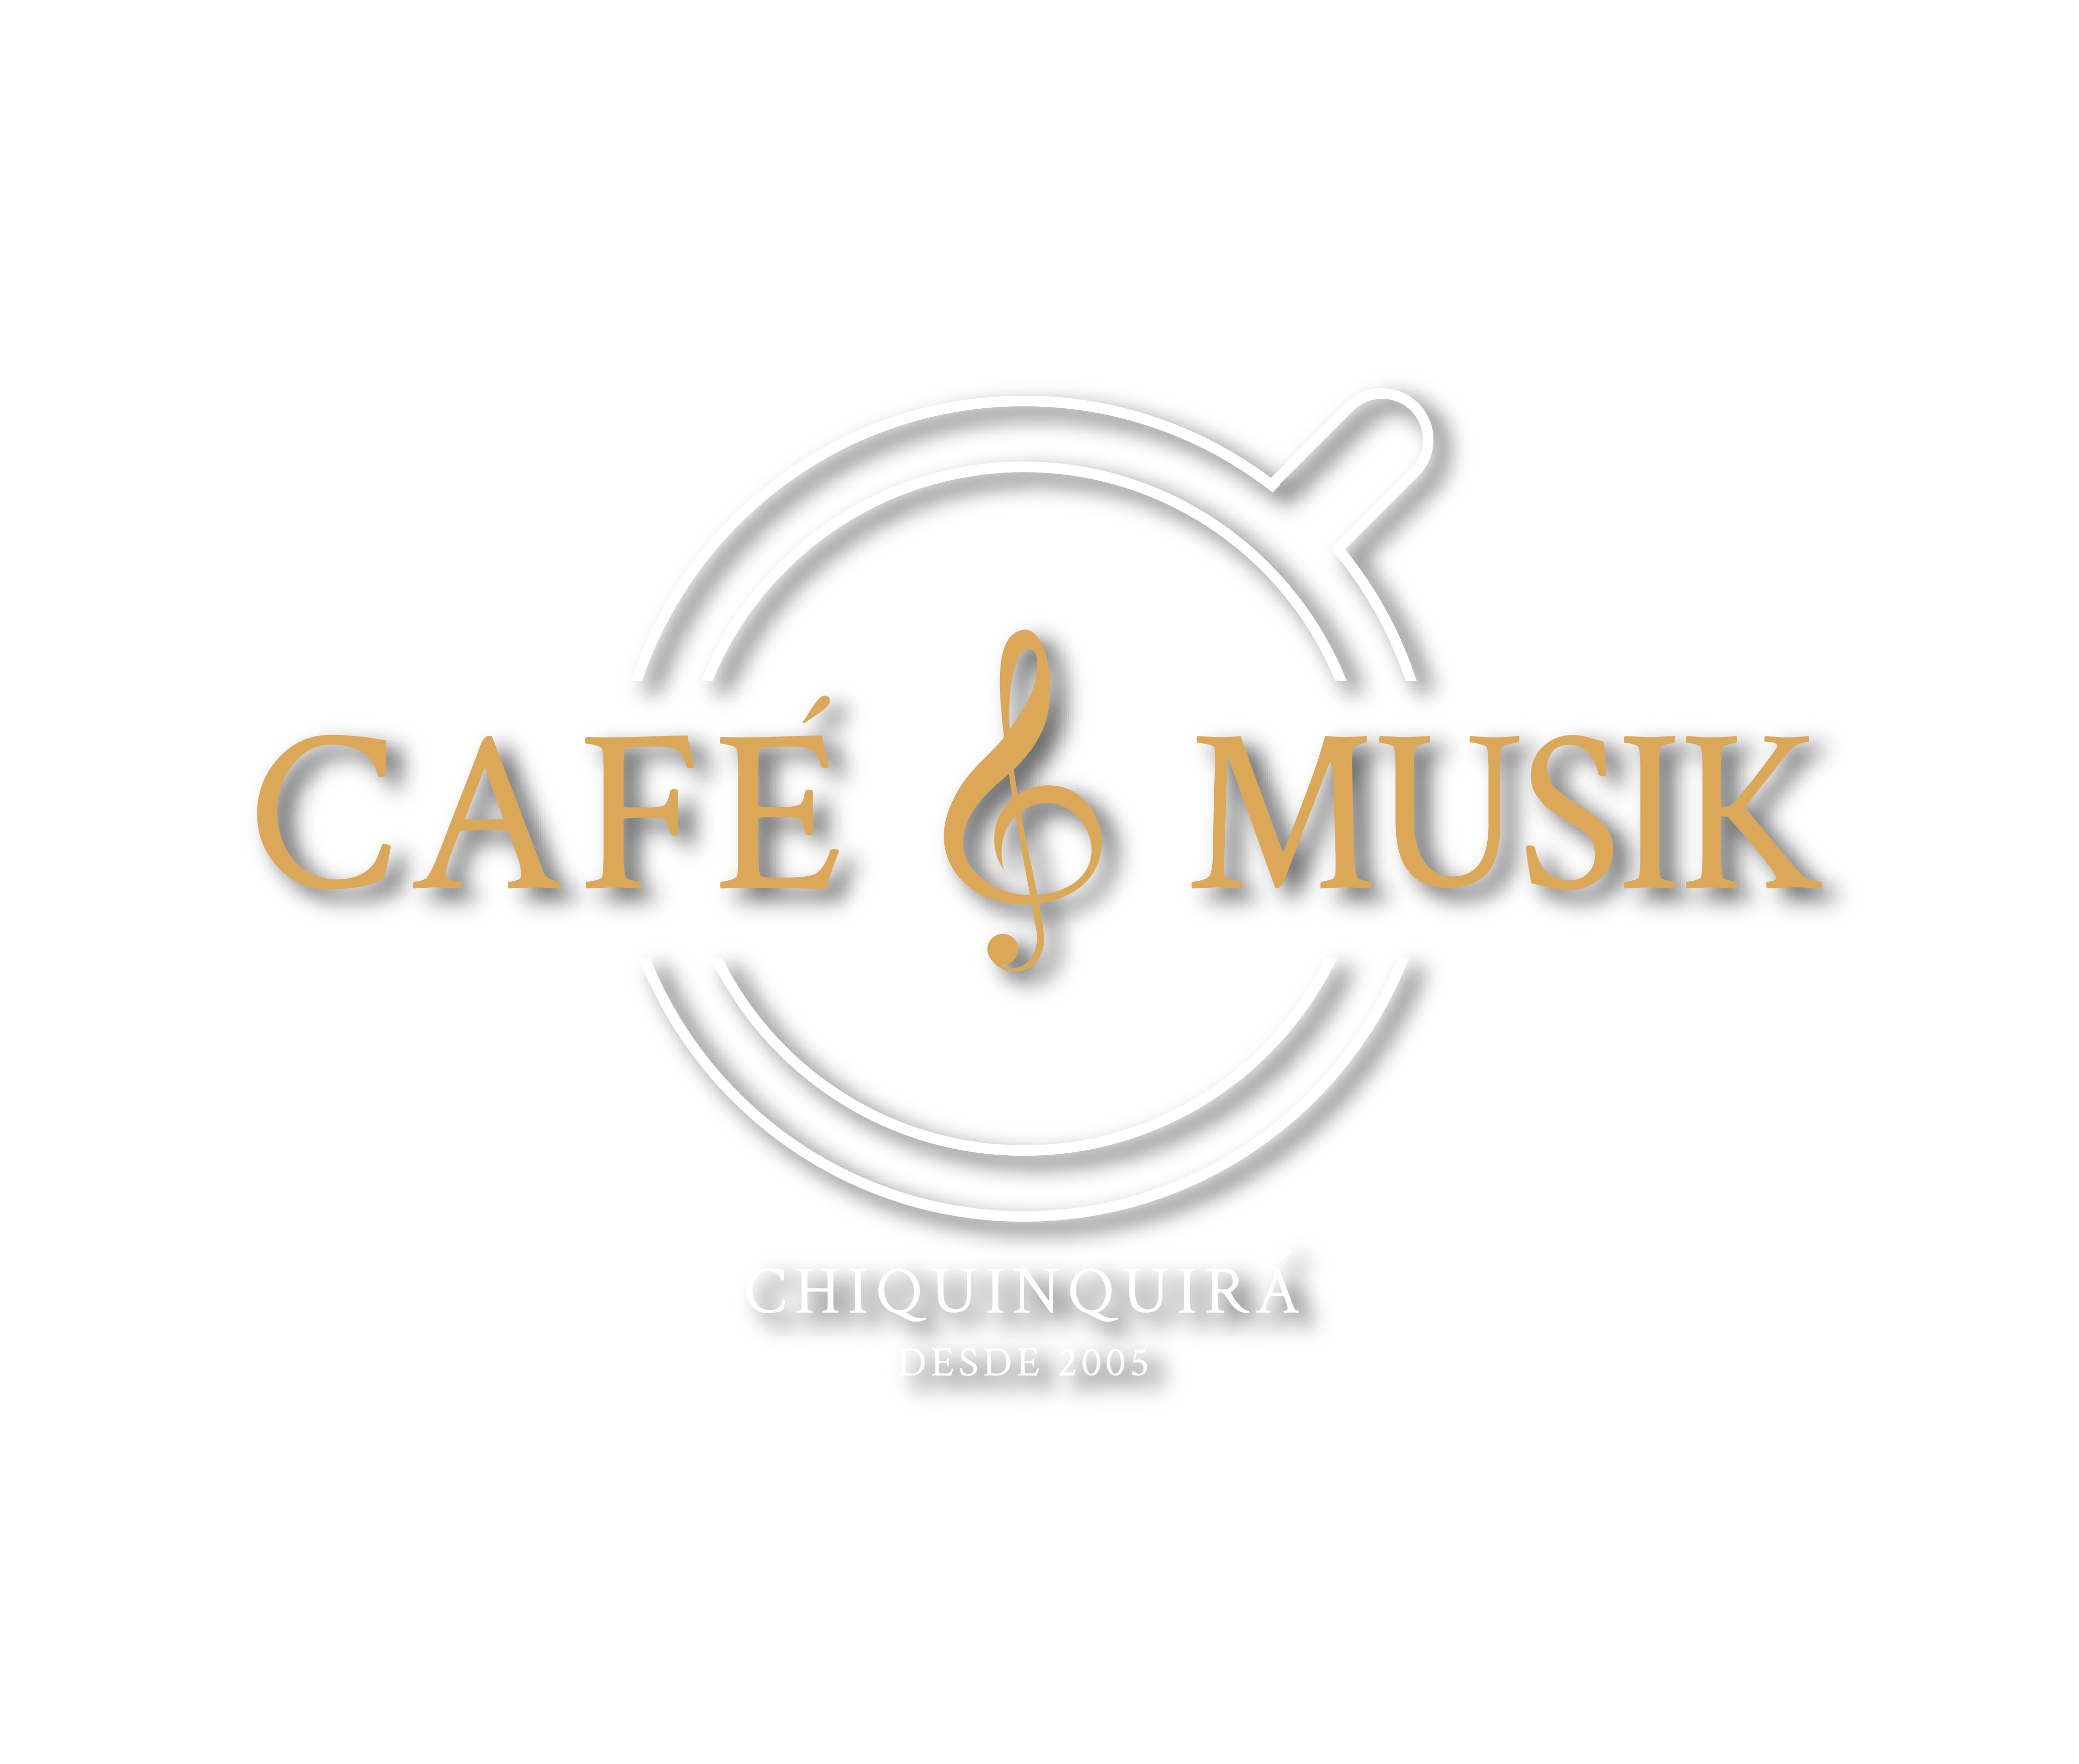 Cafe y Musik